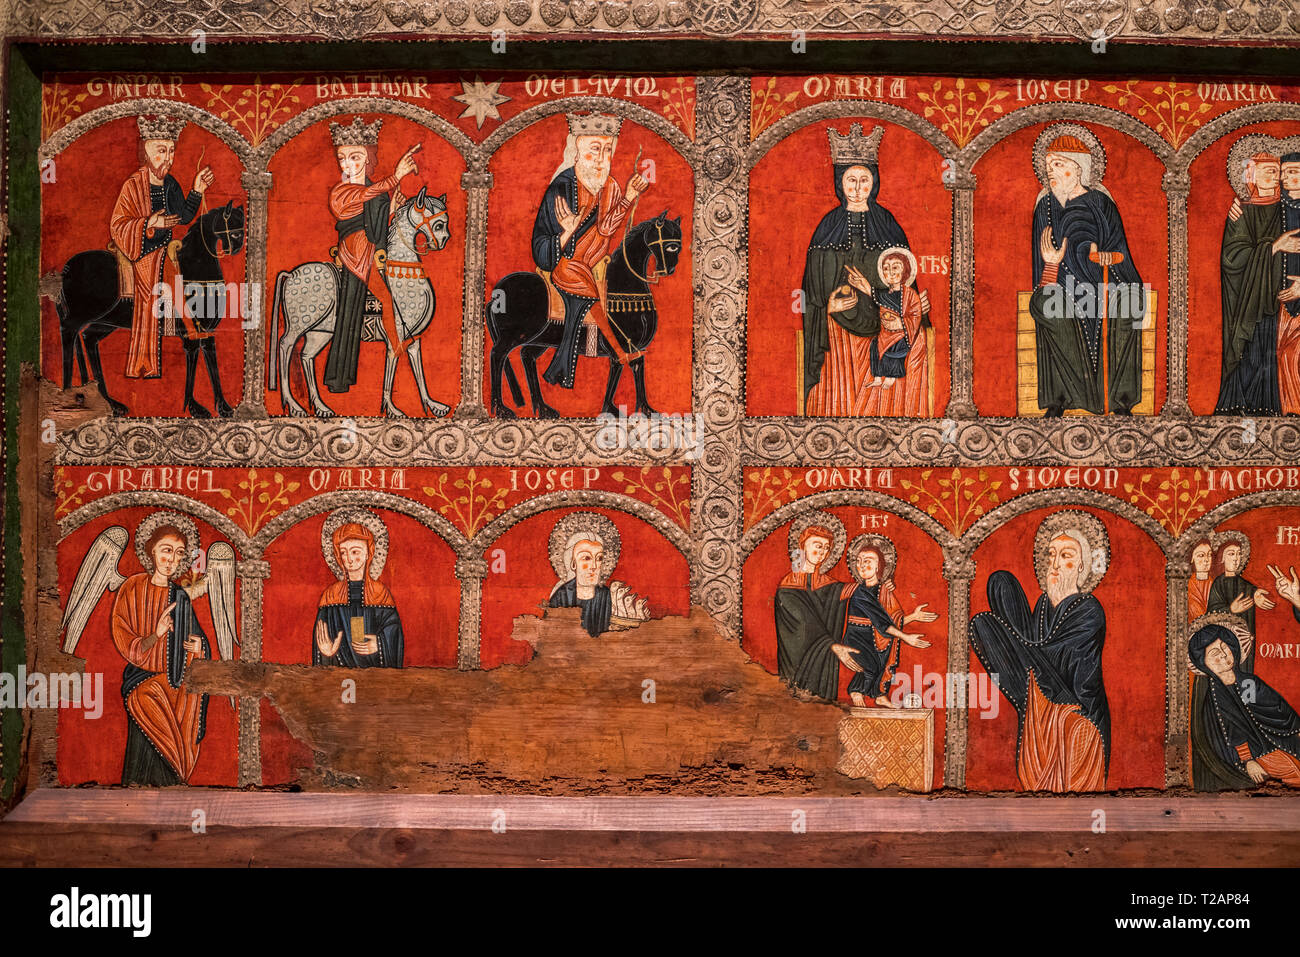 Romanische Kunst in das nationale Kunstmuseum von Katalonien, Barcrelona, Altar frontal von Mosoll (erstes Drittel des 13. Jahrhunderts). Stockfoto